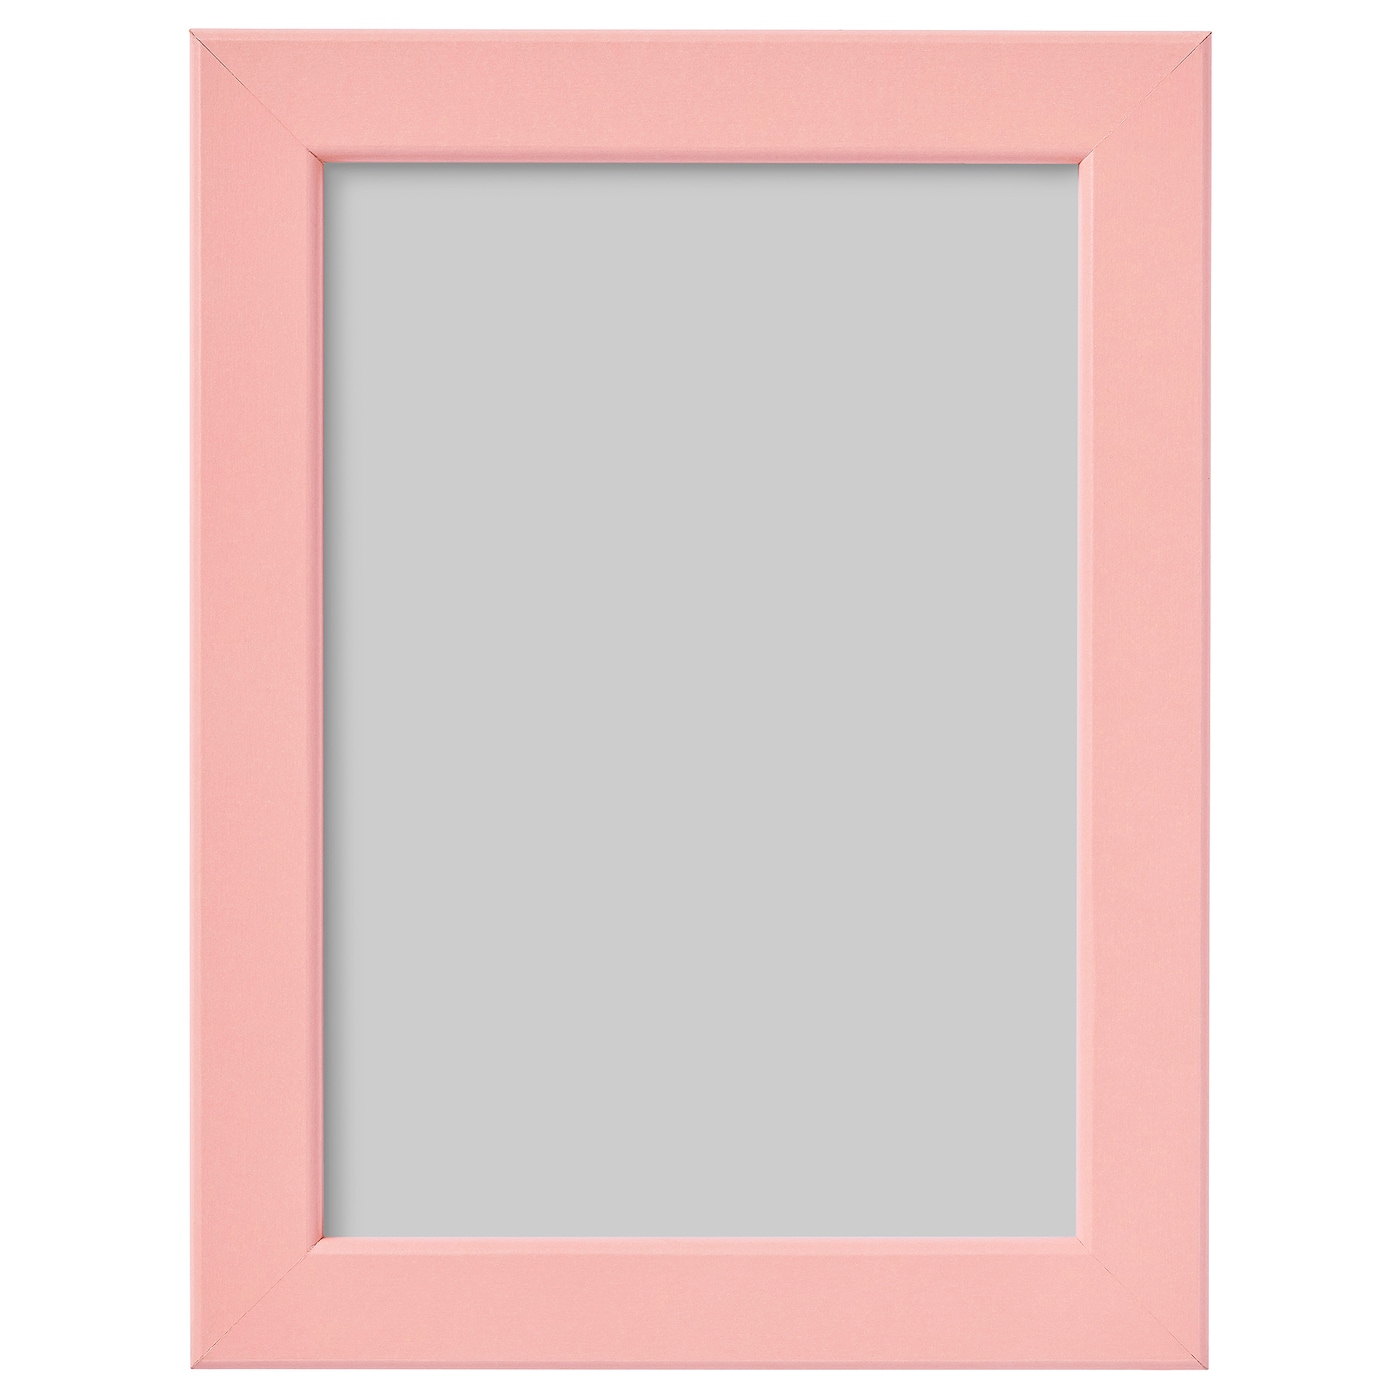 Рамка - IKEA FISKBO, 13х18 см, розовый, ФИСКБО ИКЕА